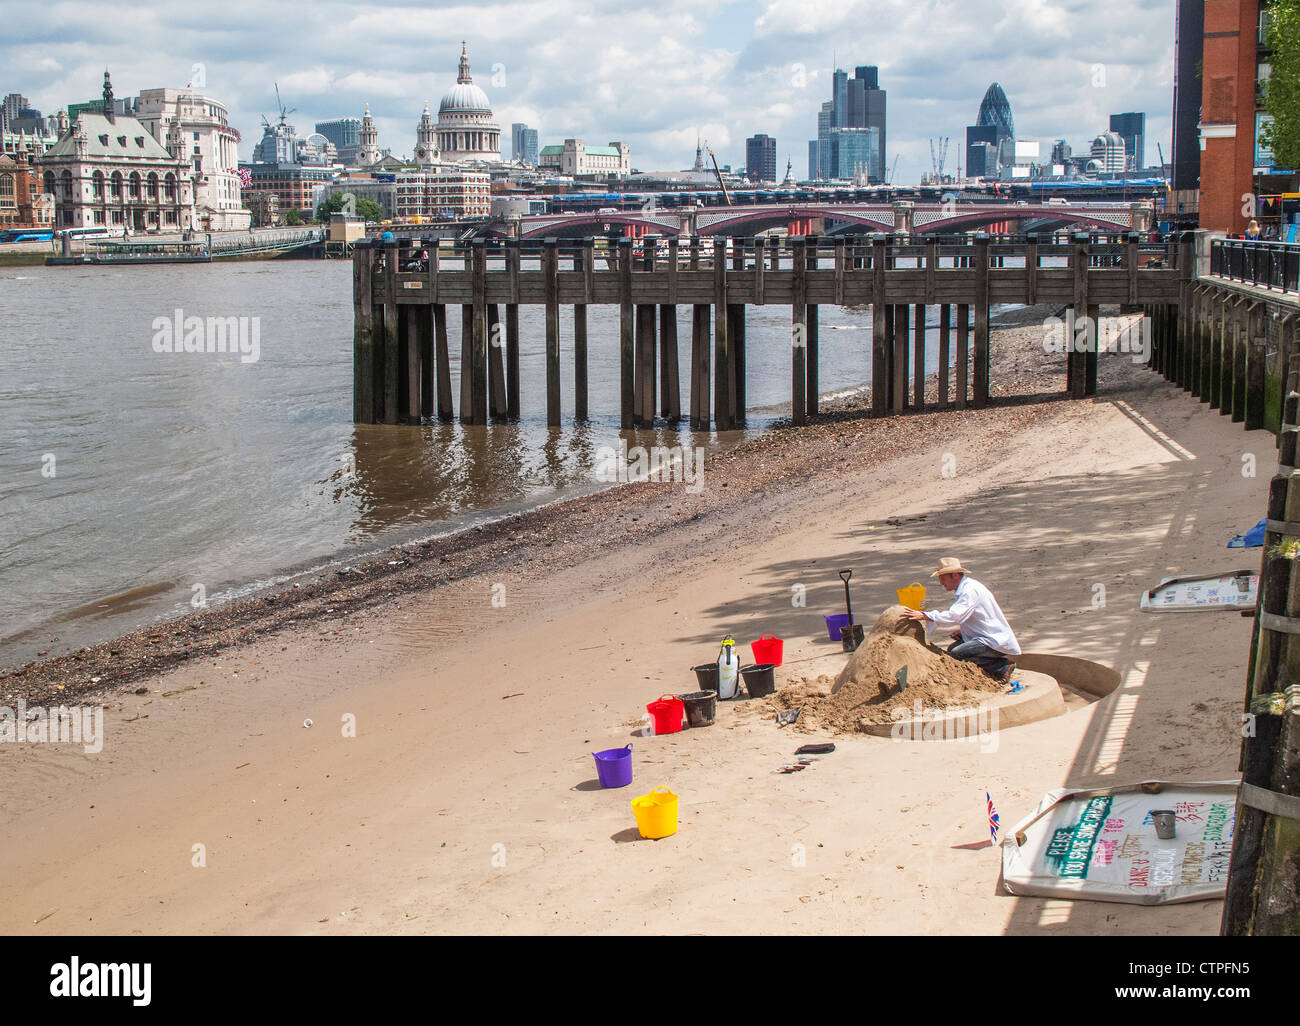 L'uomo costruire le sculture di sabbia per sul terrapieno a sud del fiume Tamigi, raccolta di suggerimenti, con lo skyline di Londra in background Foto Stock